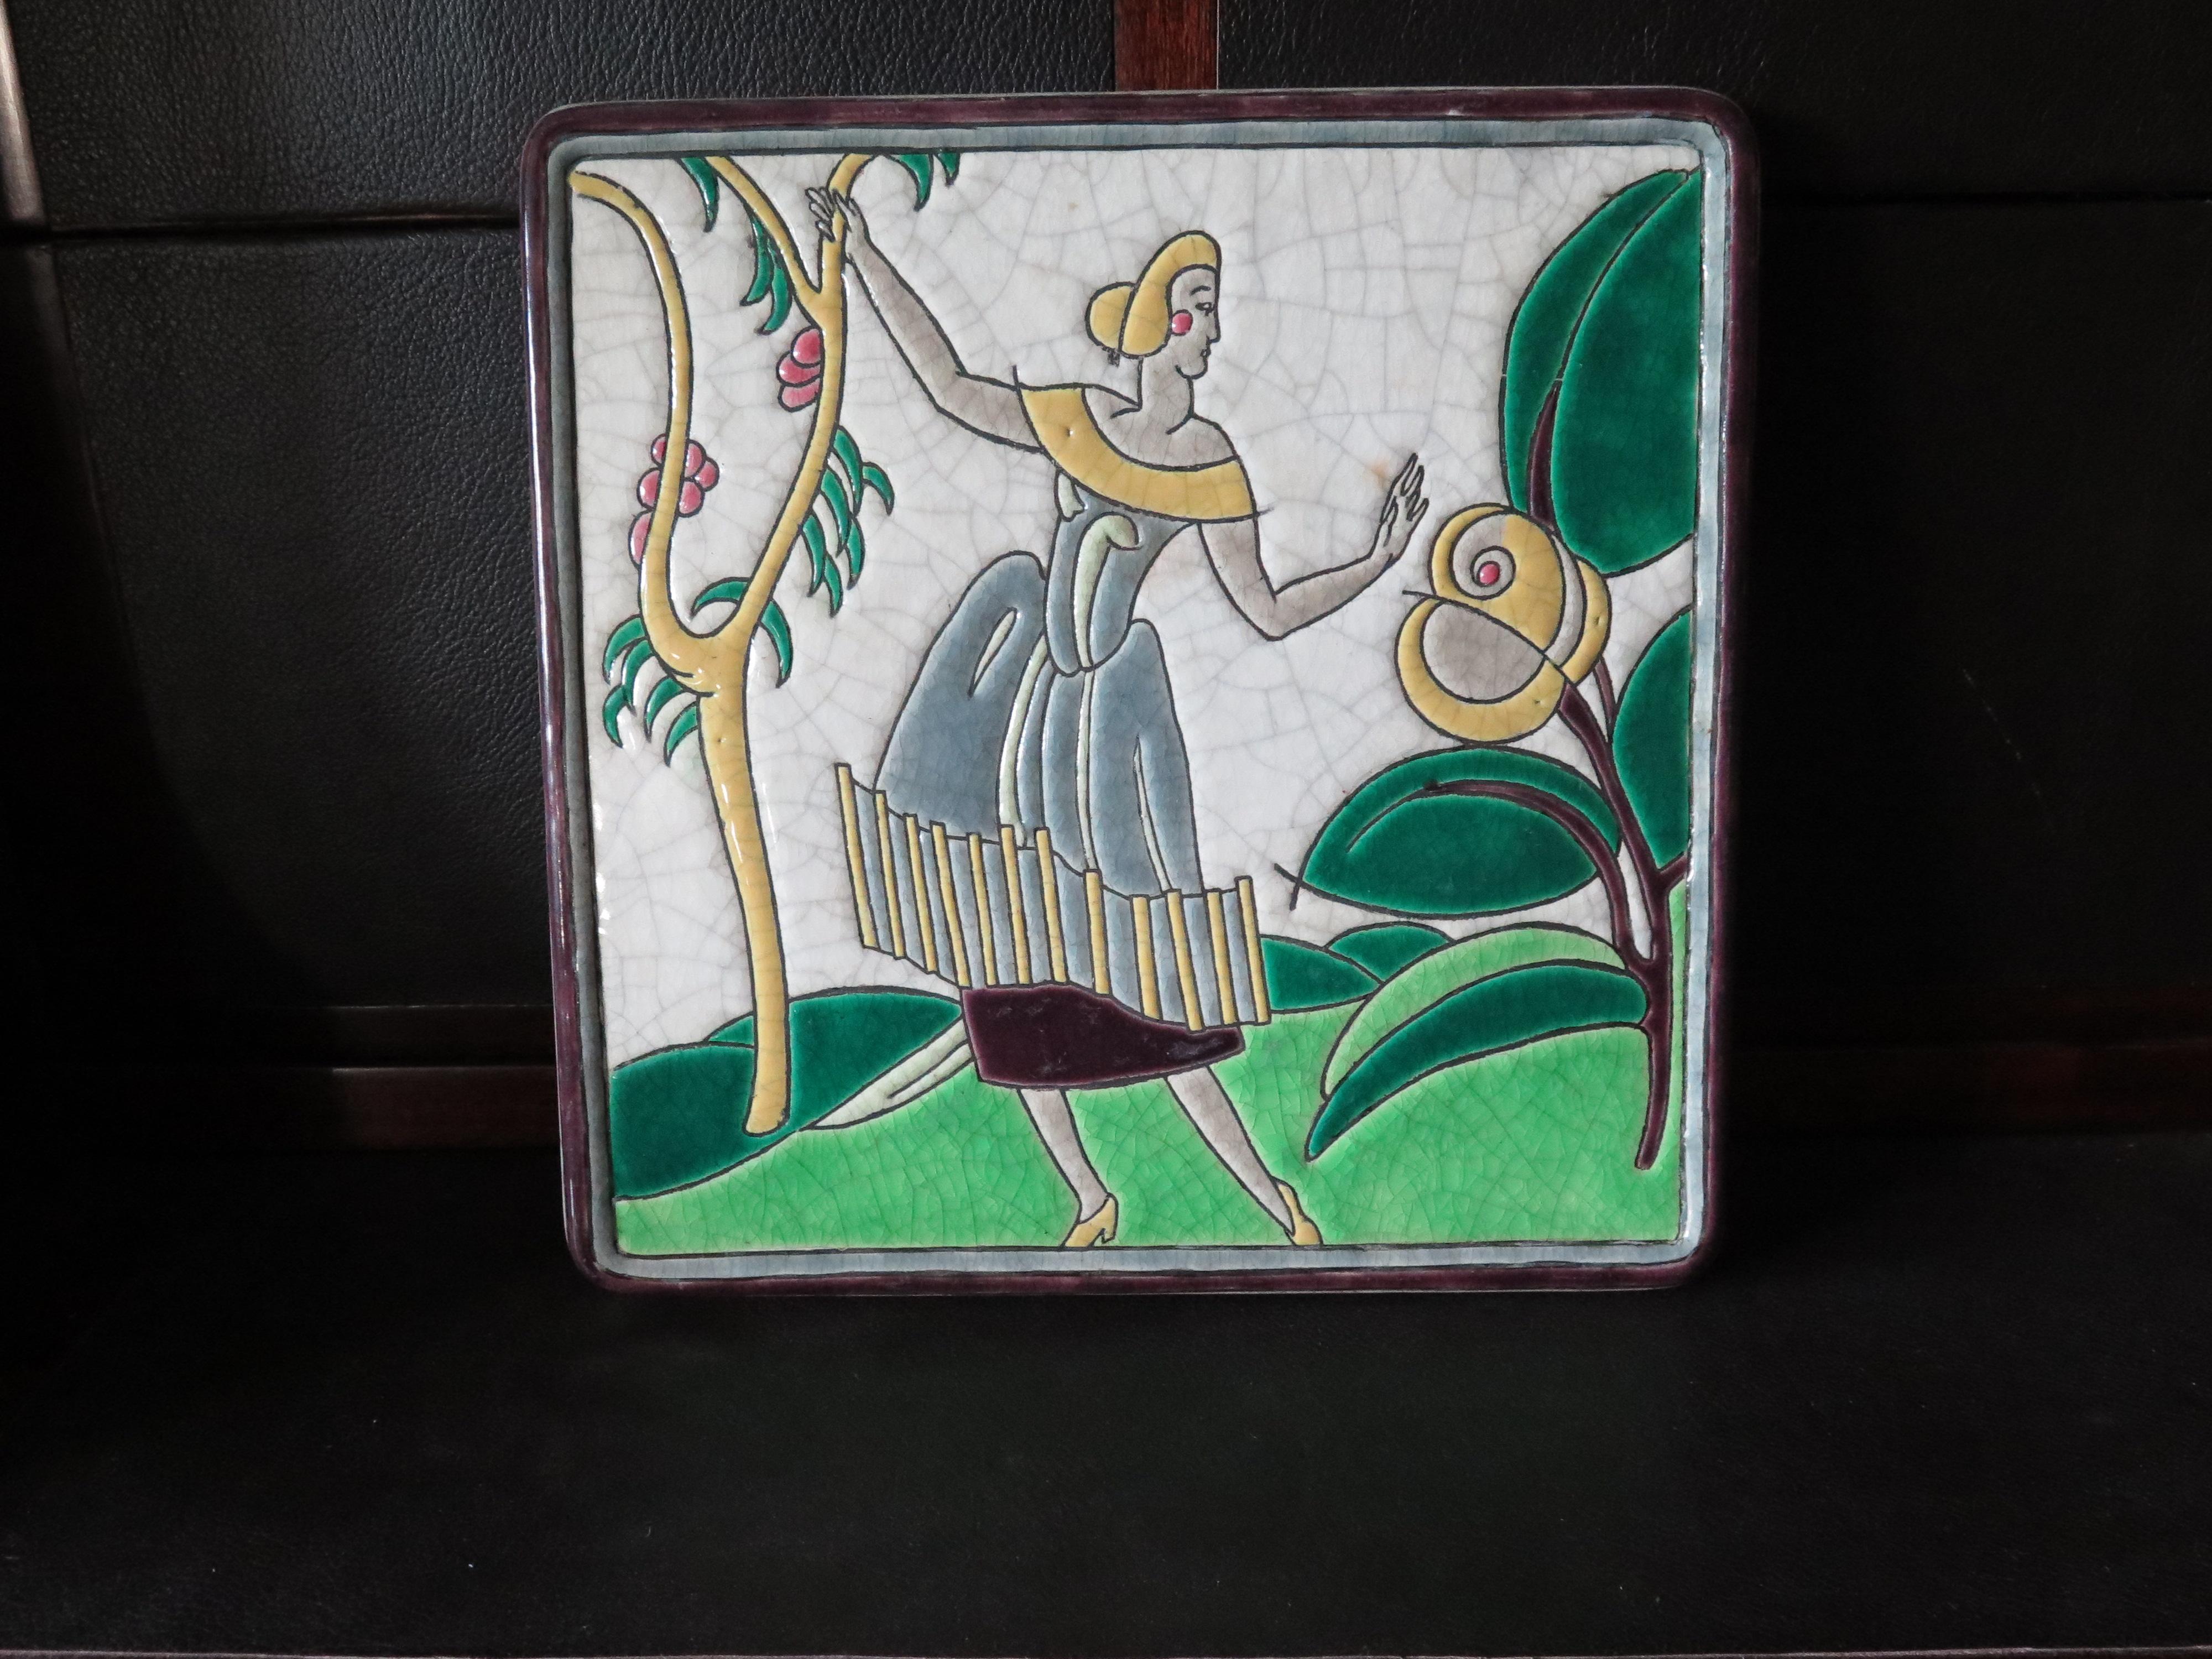 Un fabuleux chargeur ou plaque murale Art Déco des années 1920 de Primavera/Longwy (avec des fixations murales au dos). Portrait stylisé d'une femme dans un paysage. Les couleurs vives et l'effet de craquelure ajoutent au charme de cette pièce.